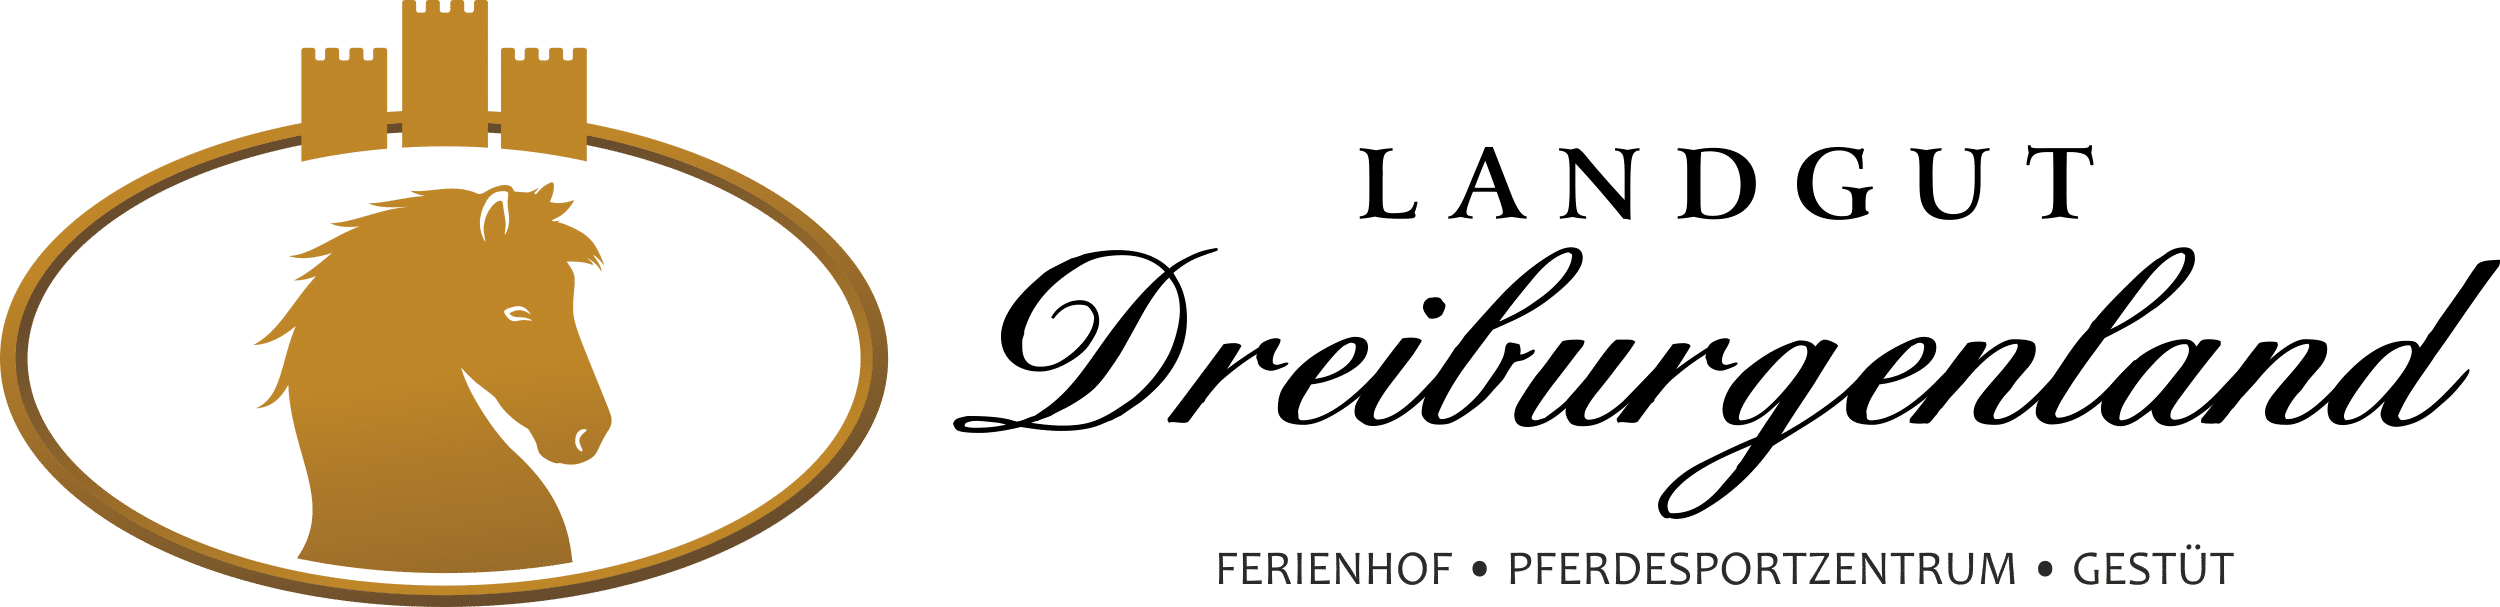 Ferienhof, Pferdesportzentrum und Gestüt "Landgut Dreiburgenland" | Kontakt - Landgut-Dreiburgenland